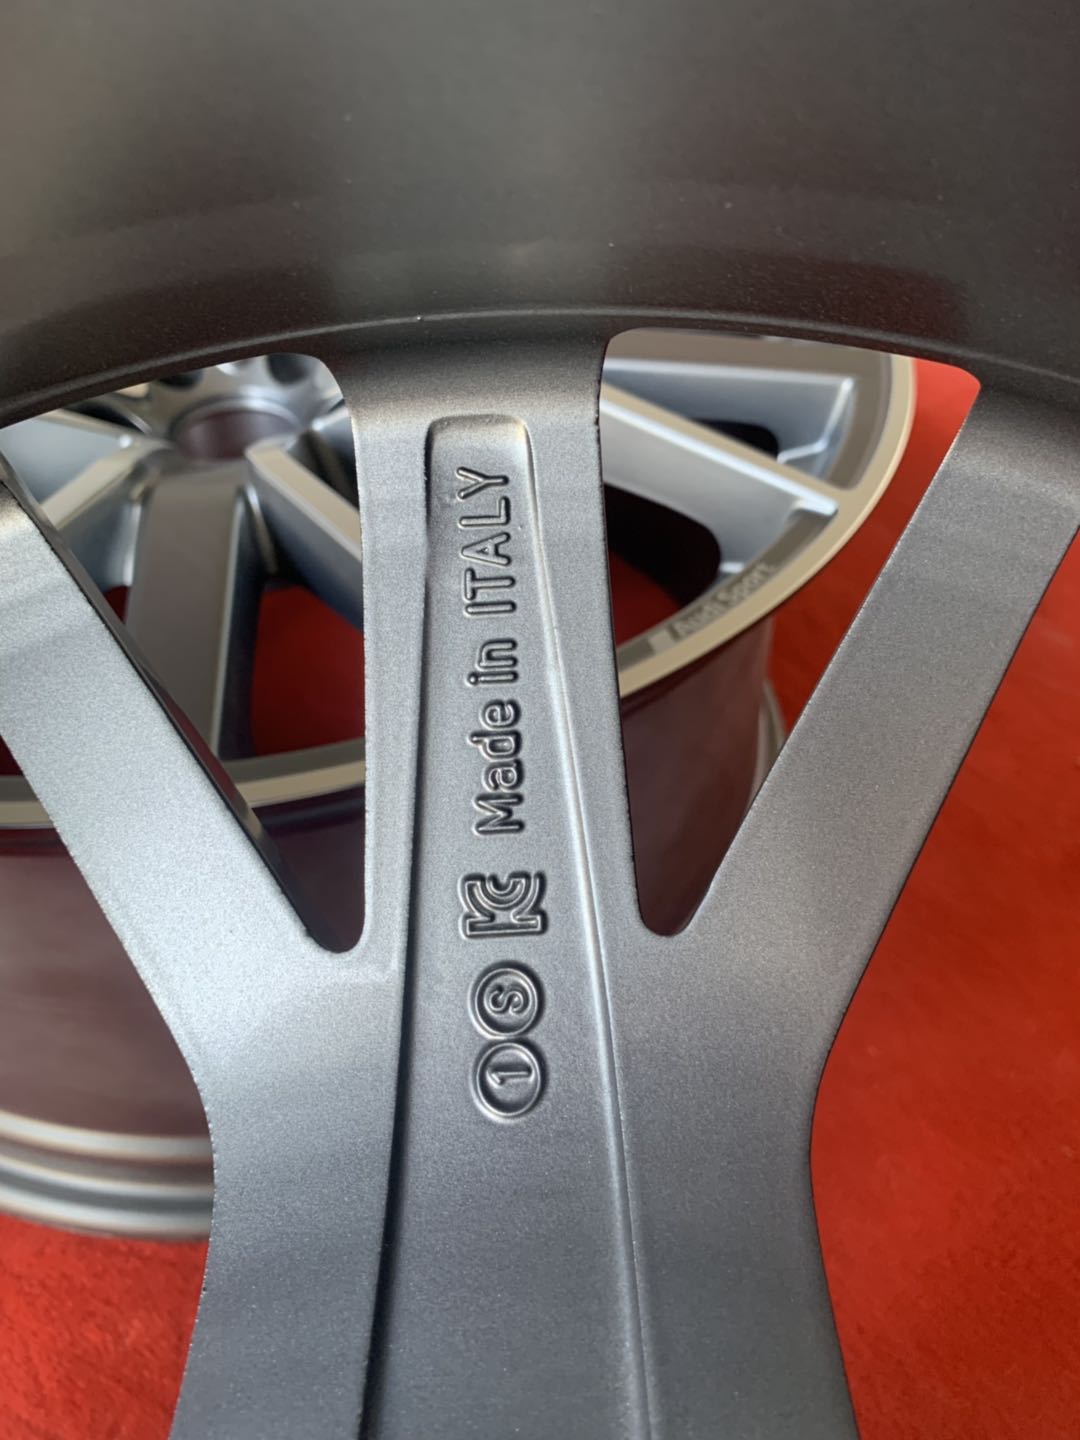 Grey 5 Double Spoke ET26 22 Inch Aluminum Rims For Audi Q8 2020